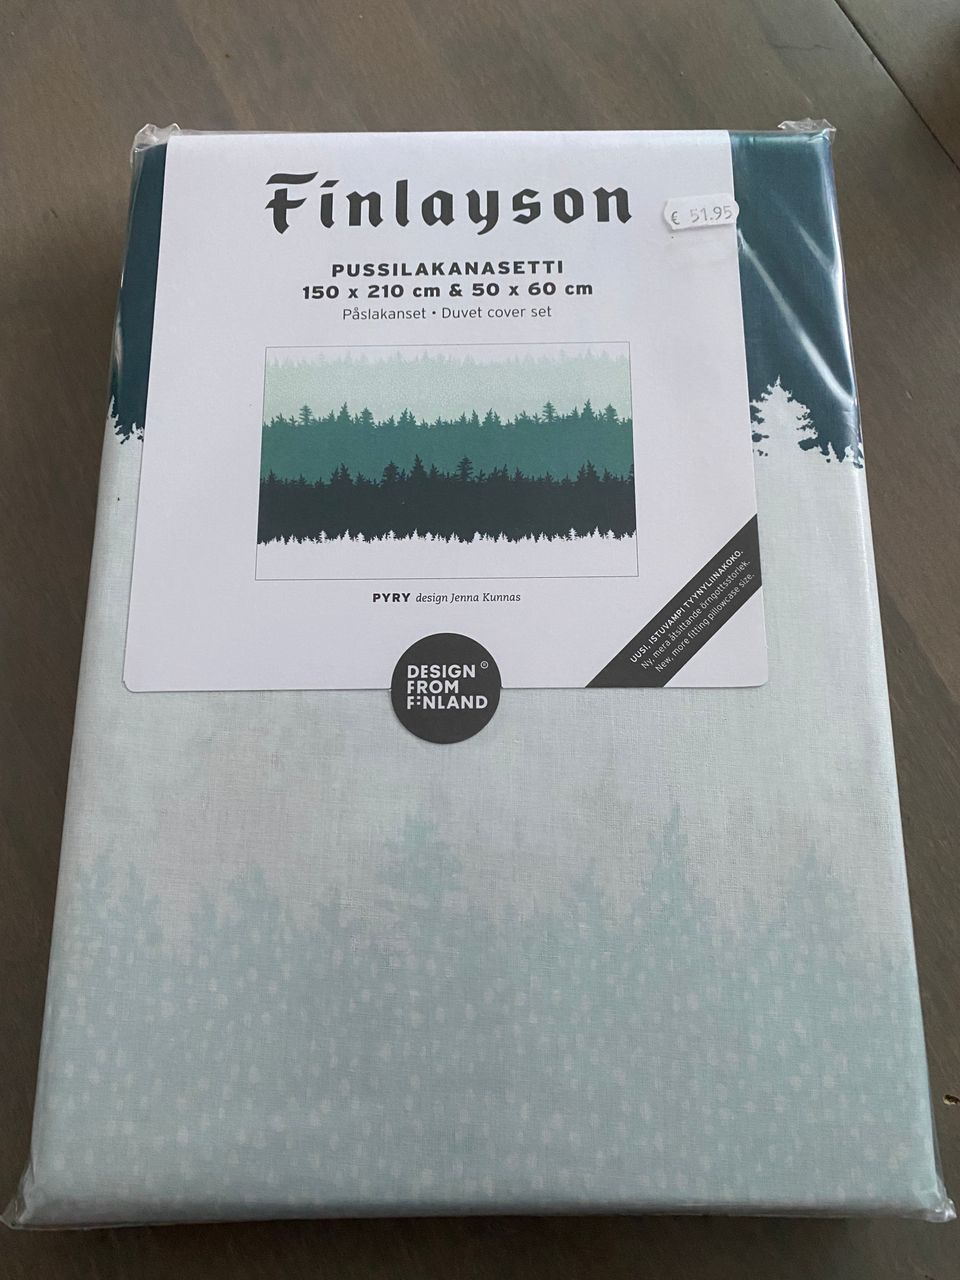 Finlayson pussilakanasetti uusi